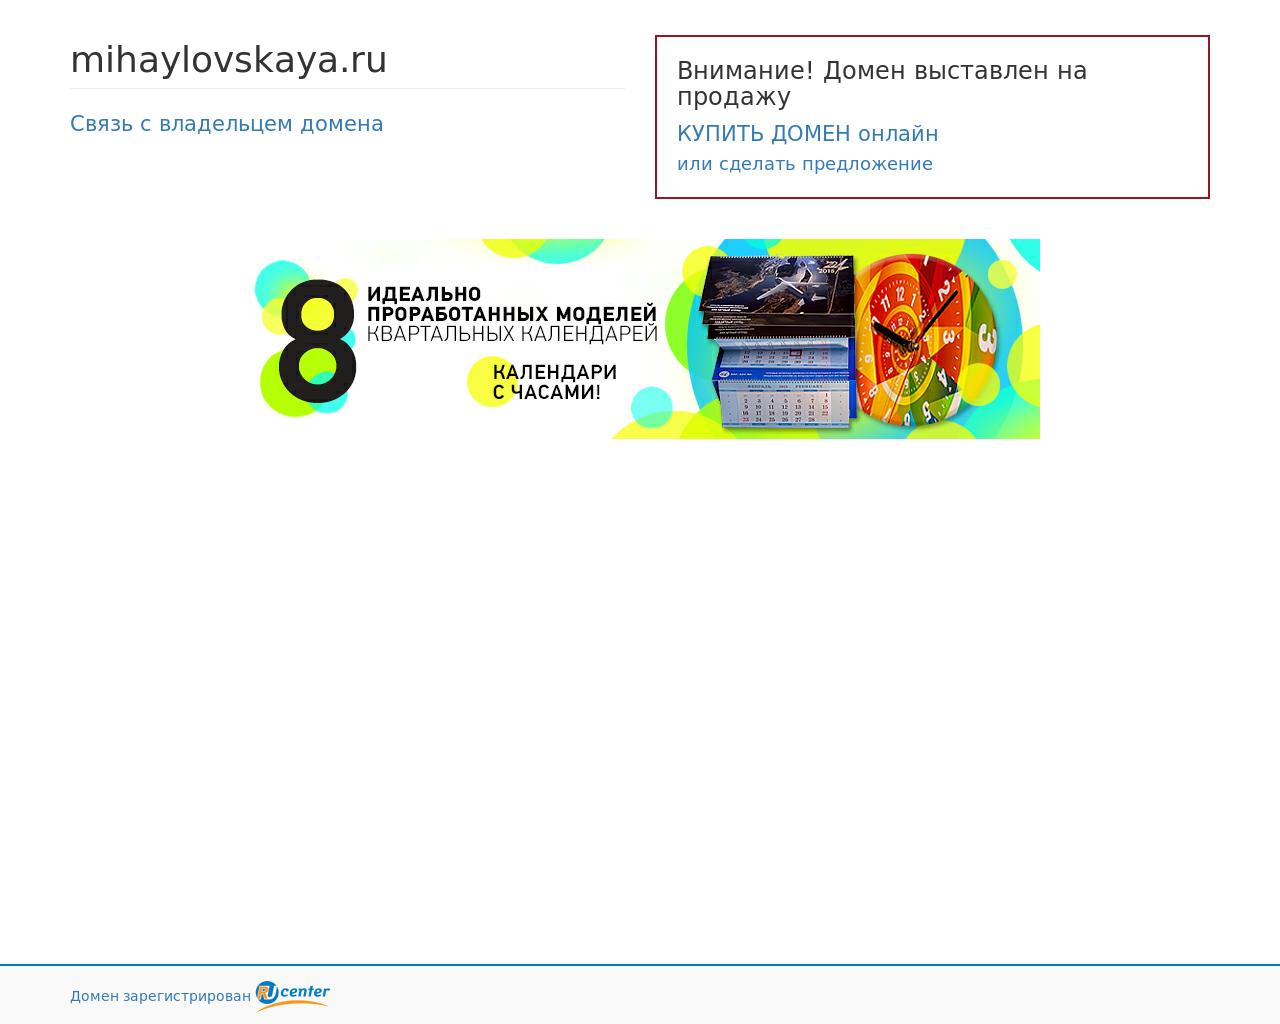 Изображение сайта mihaylovskaya.ru в разрешении 1280x1024